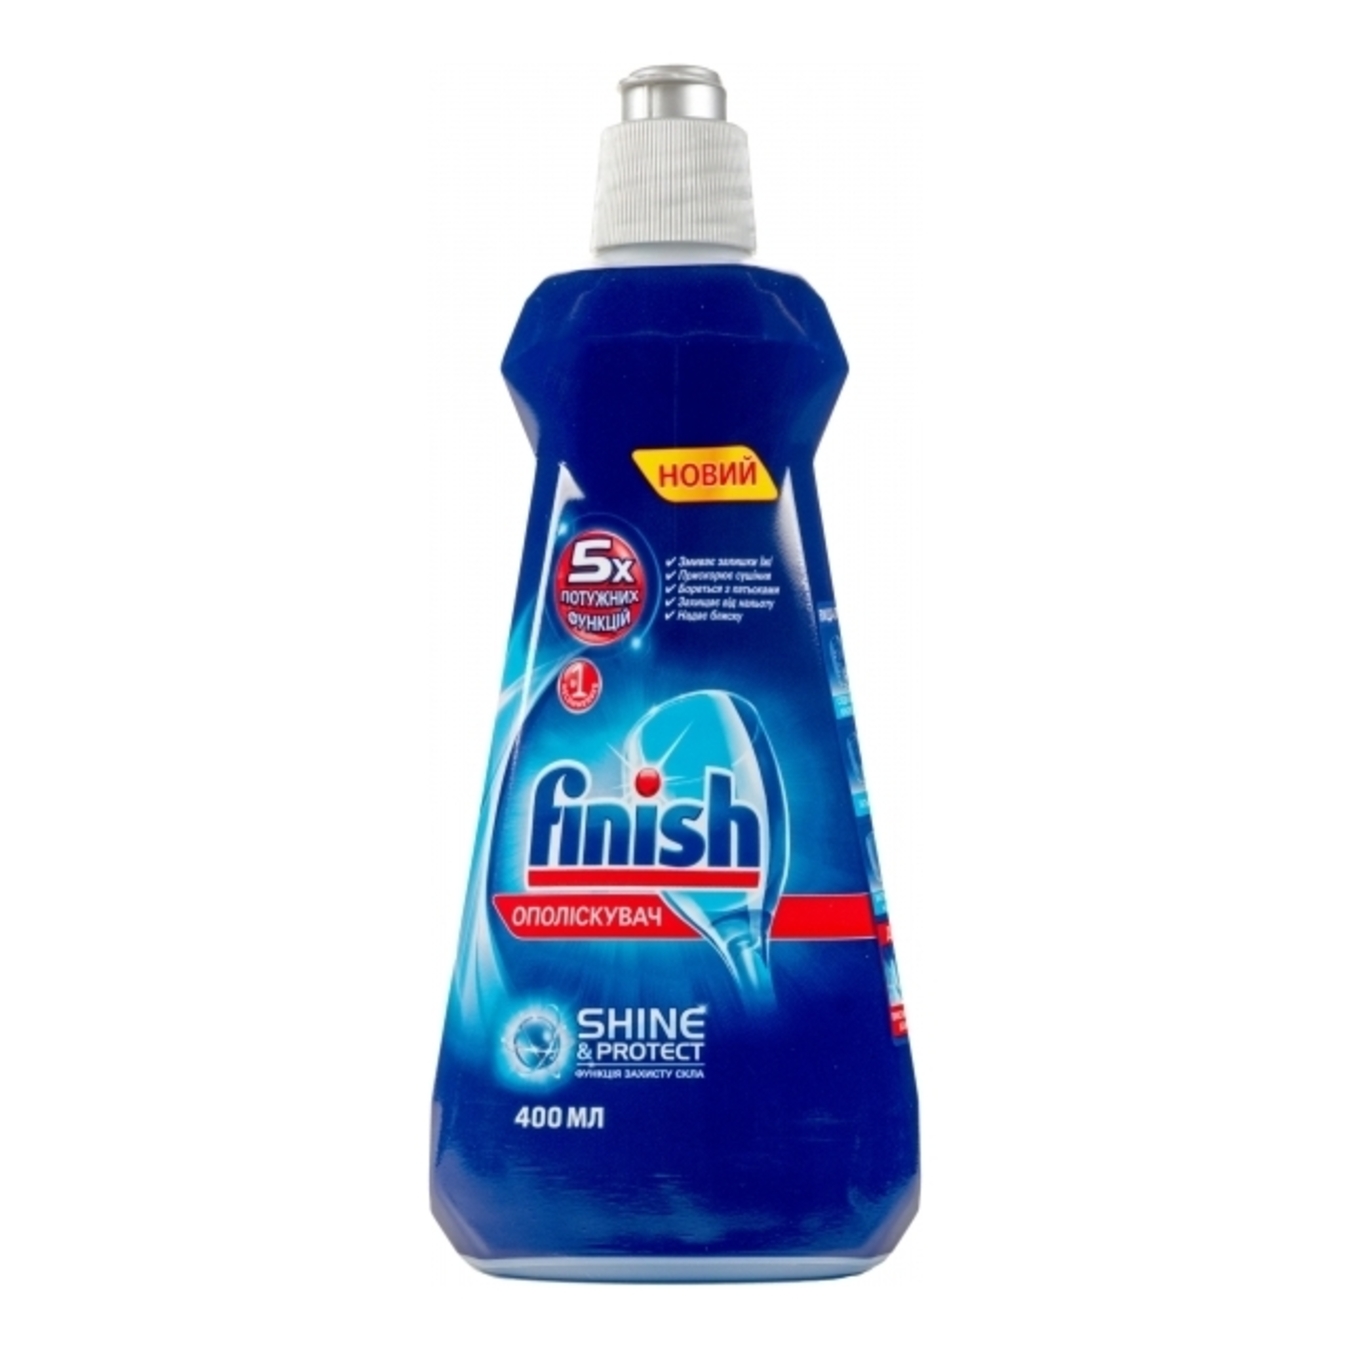 Finish Rinse Aid for Dishwashers 400ml